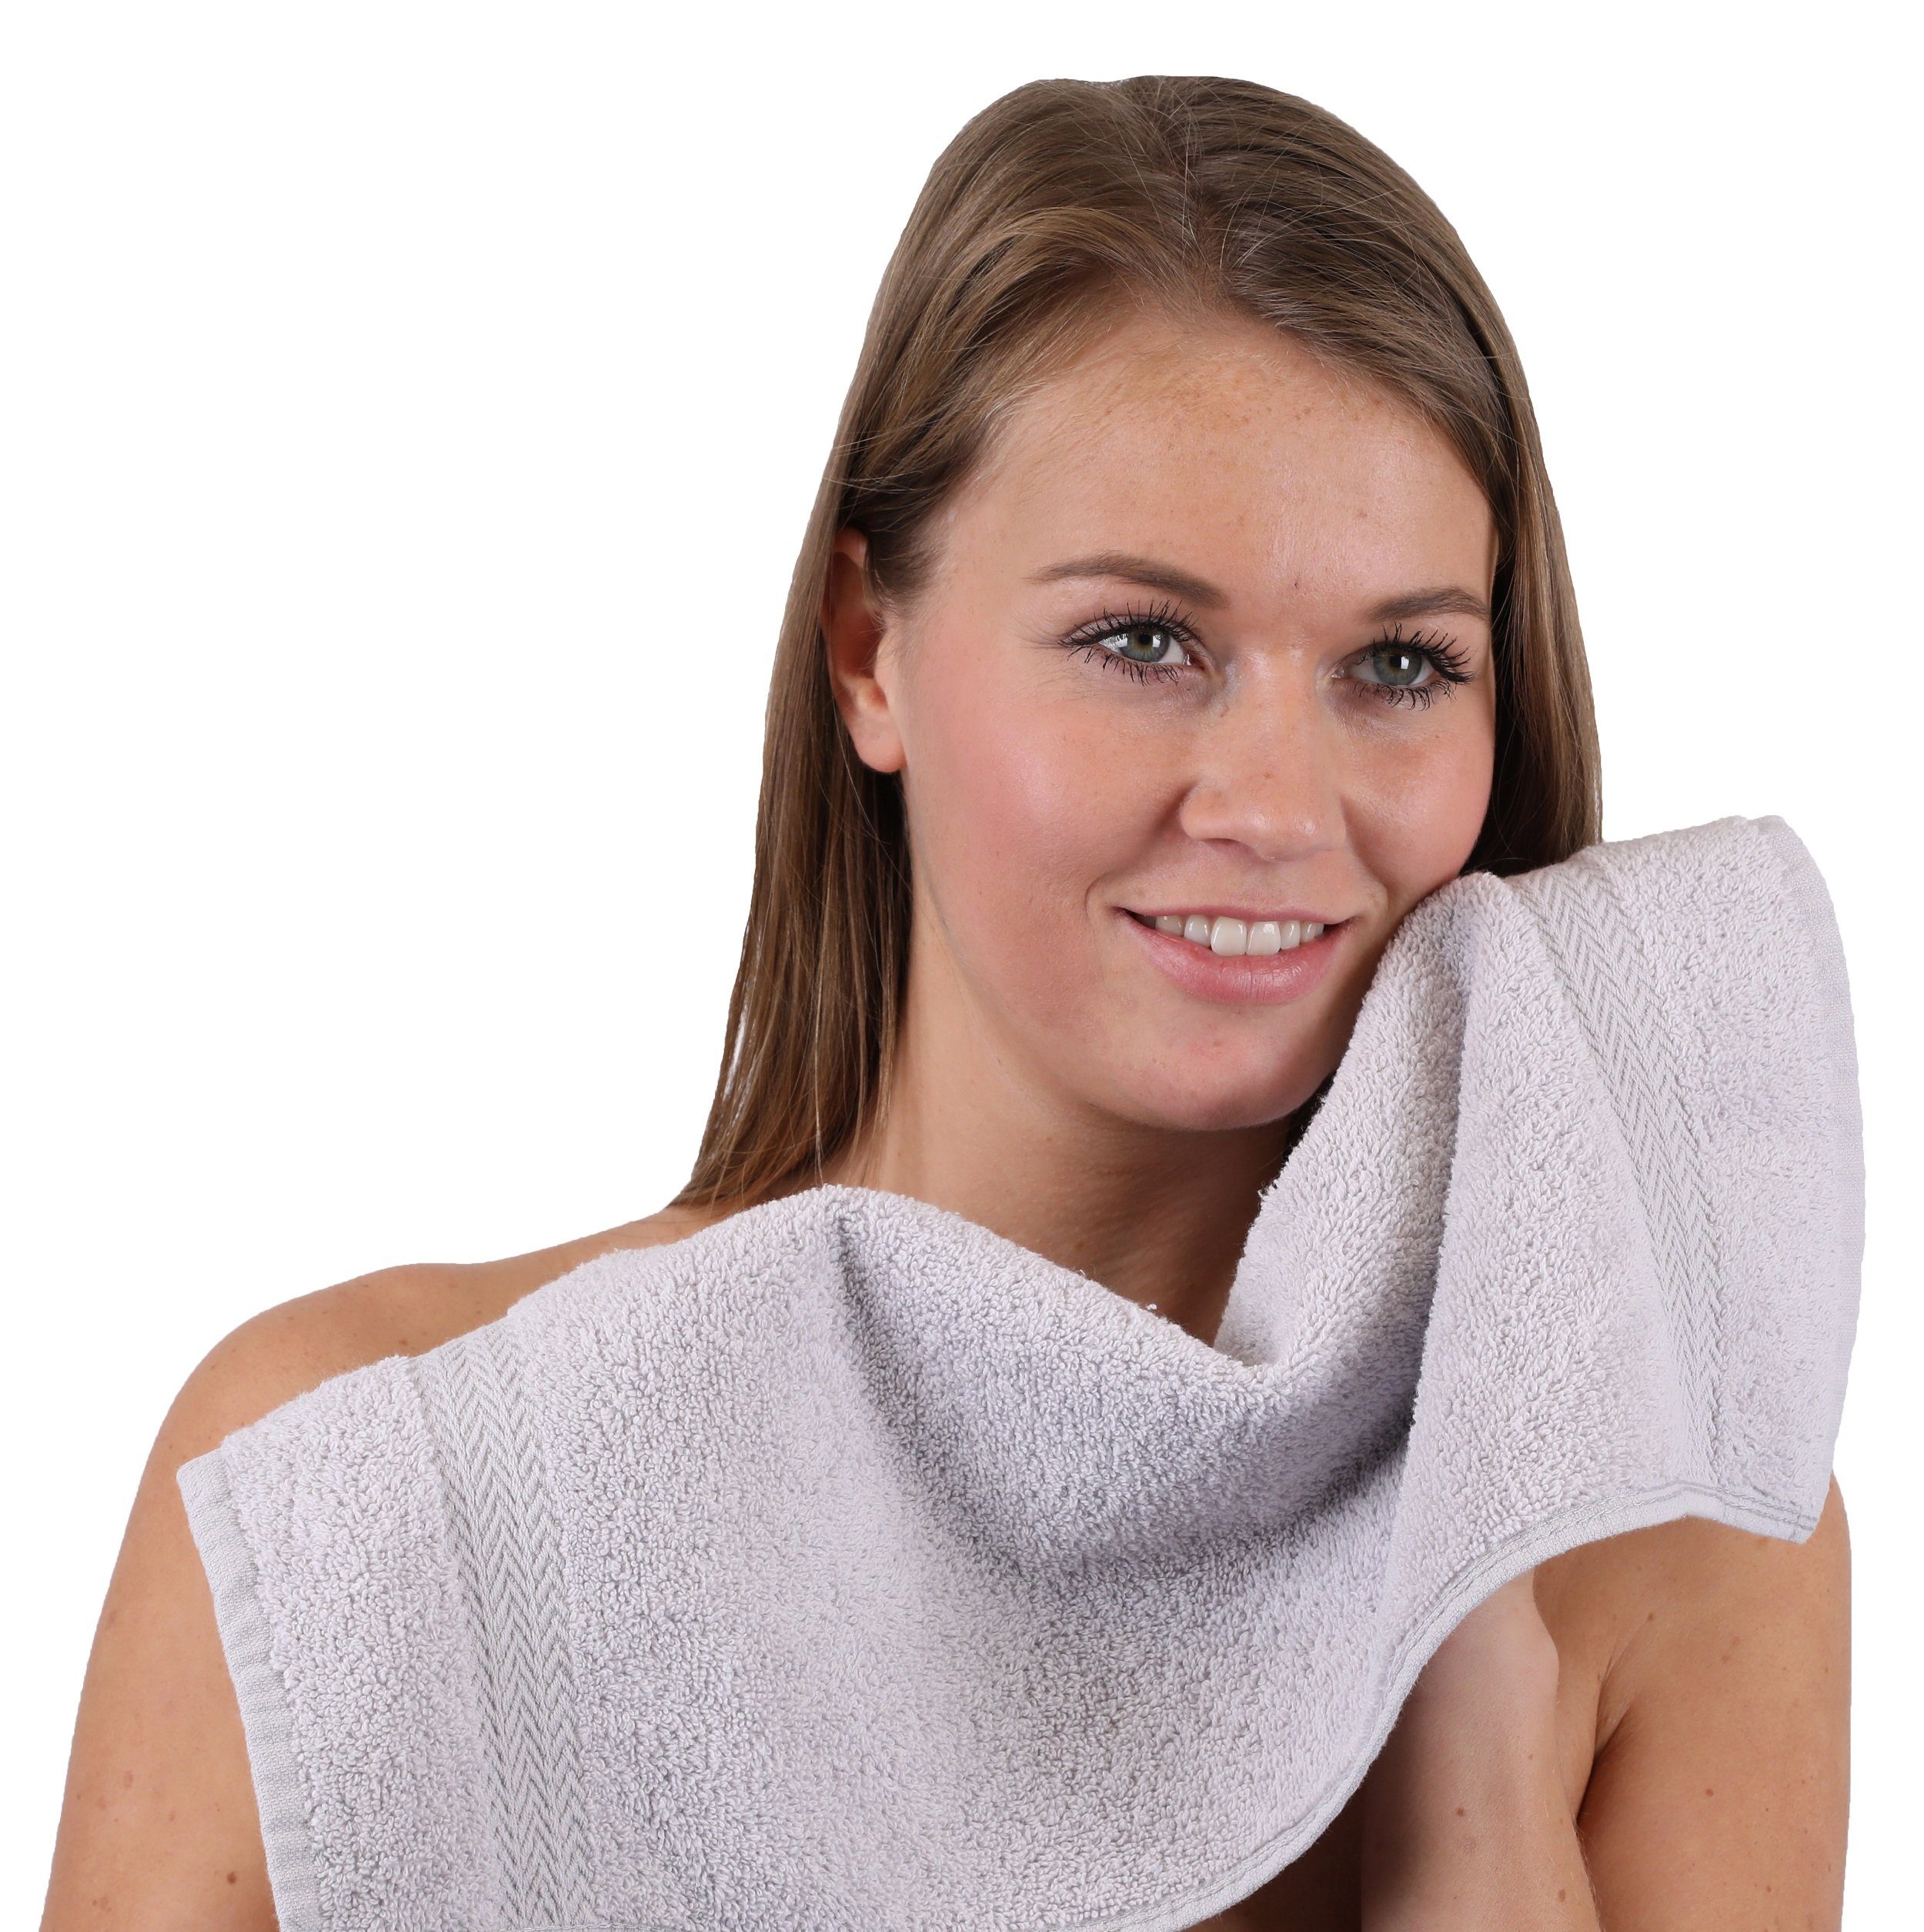 Betz Handtuch Baumwolle Set Farbe Classic 10-TLG. silbergrau, 100% Handtuch-Set orange und